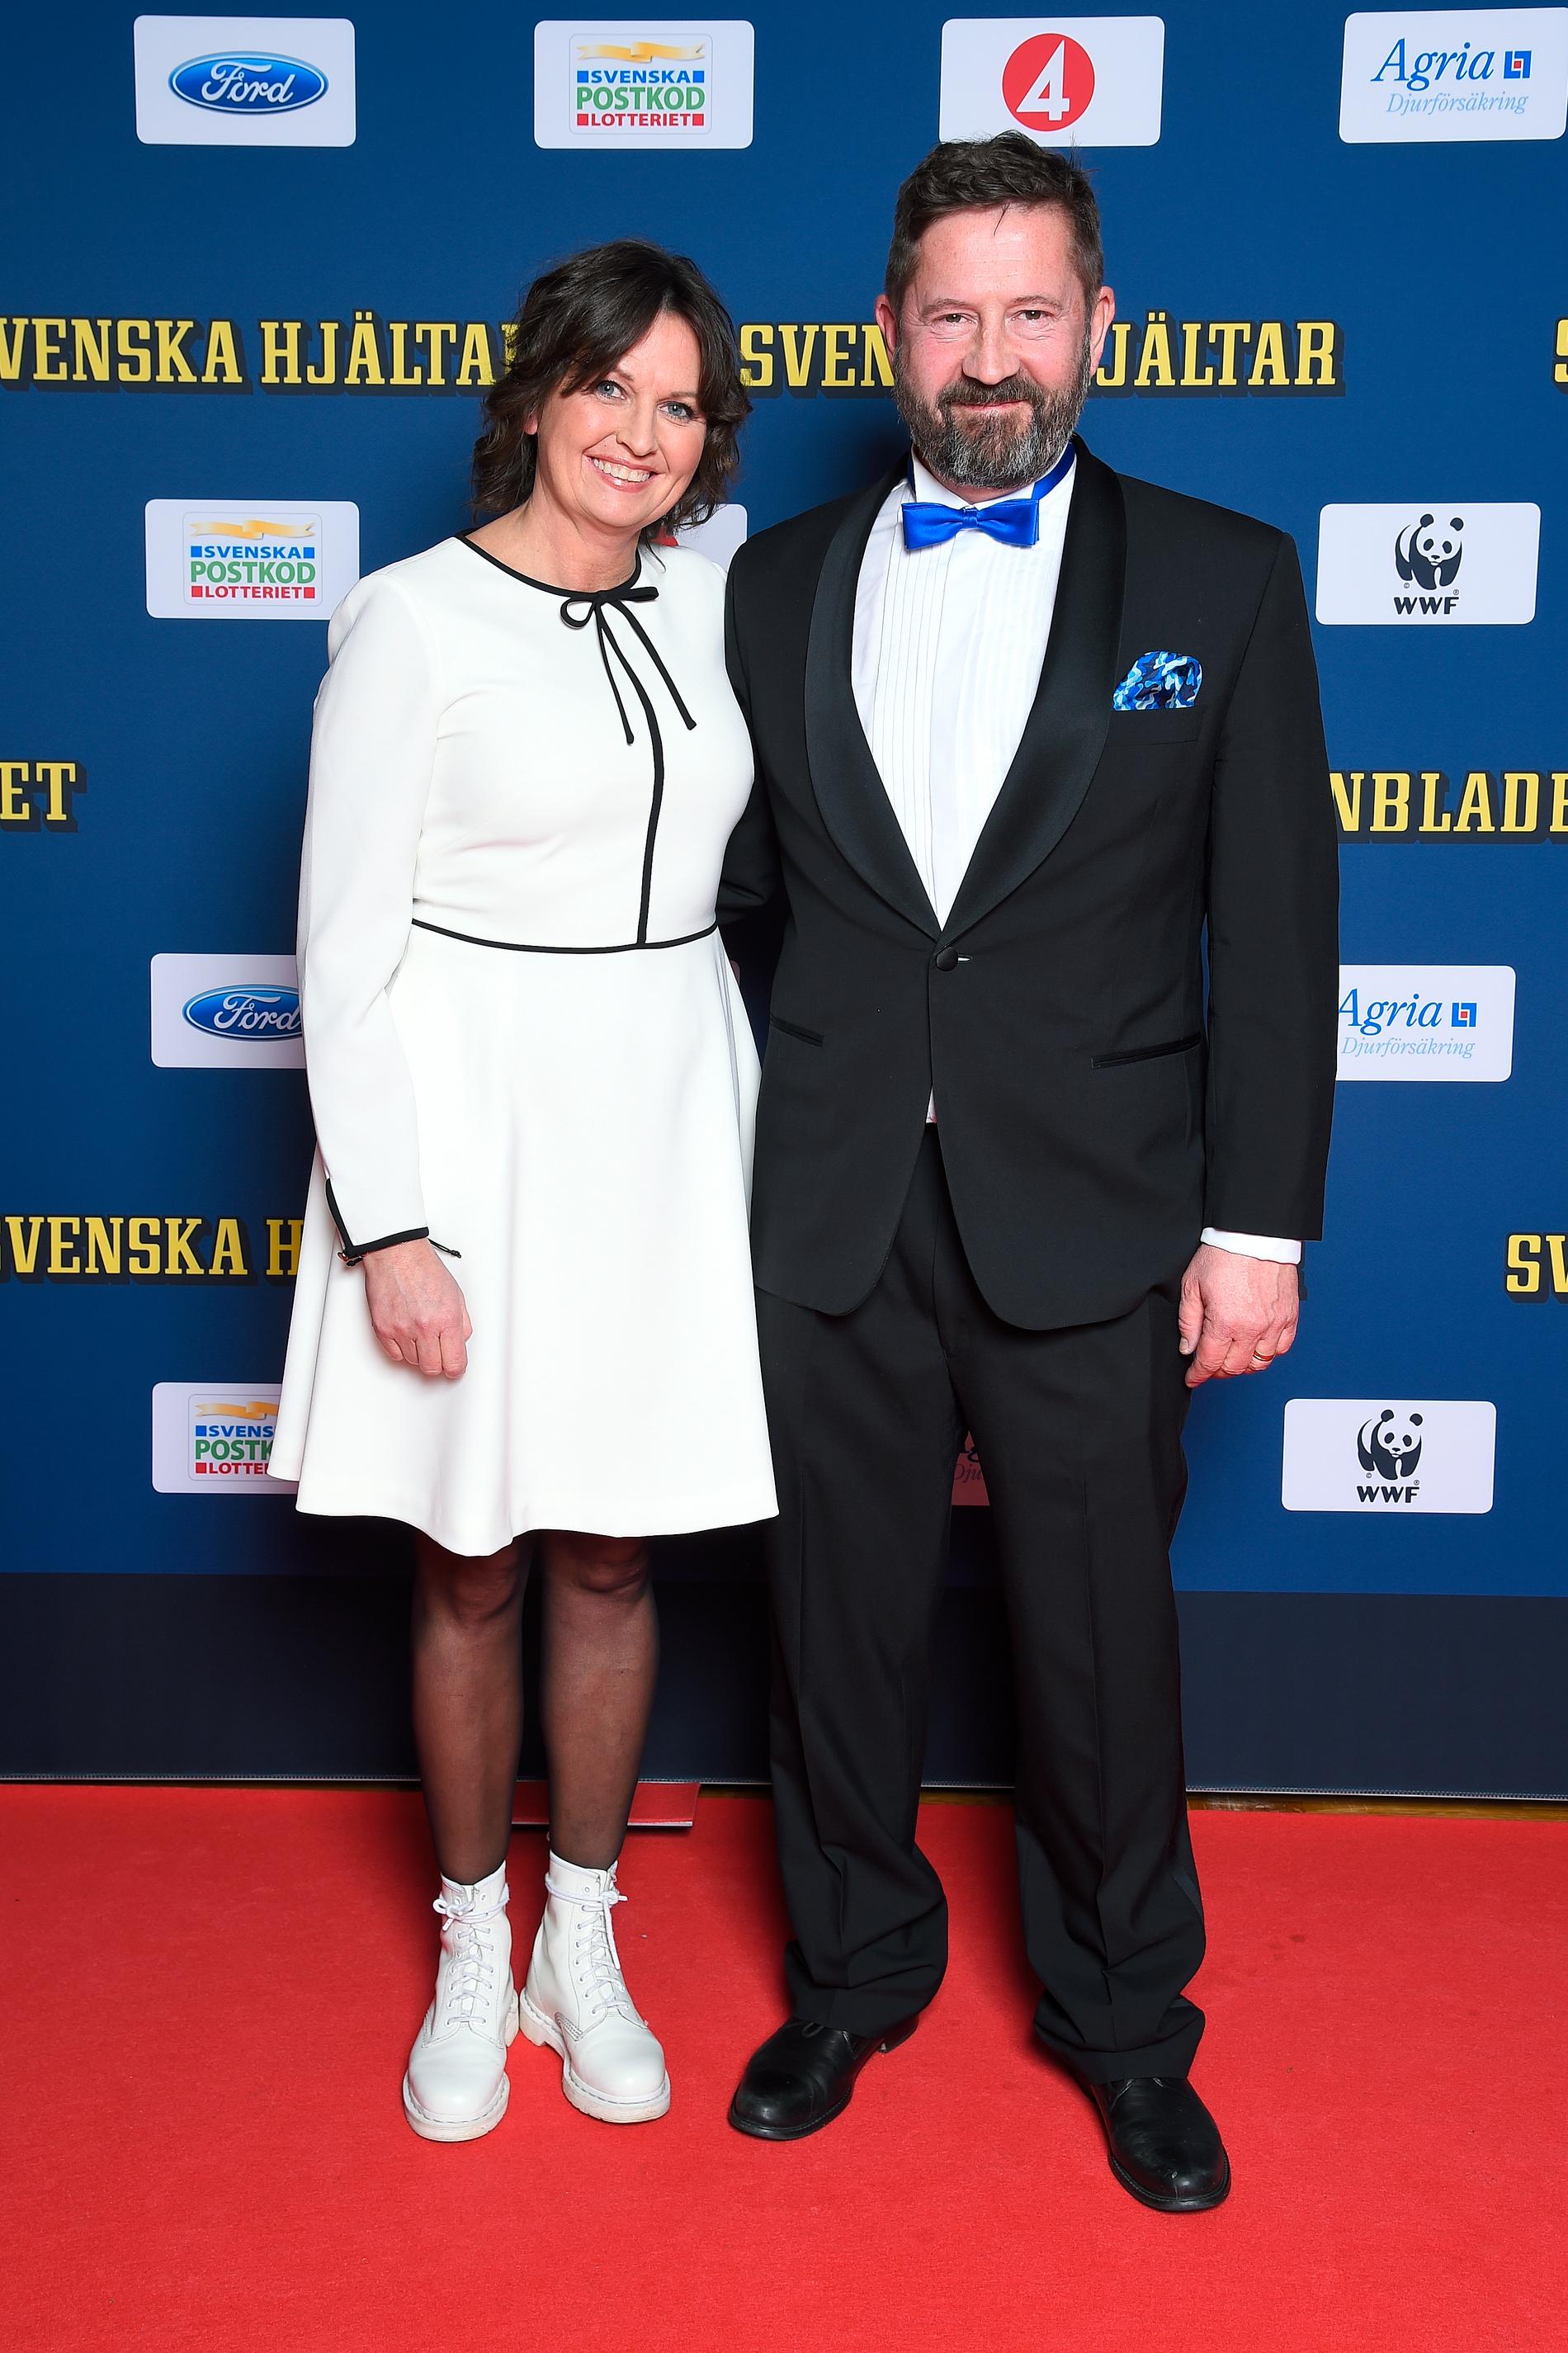 Aftonbladets publisher Sofia Olson Olsén tillsammans med Svenska hjältars projektchef Nicke Franchell.